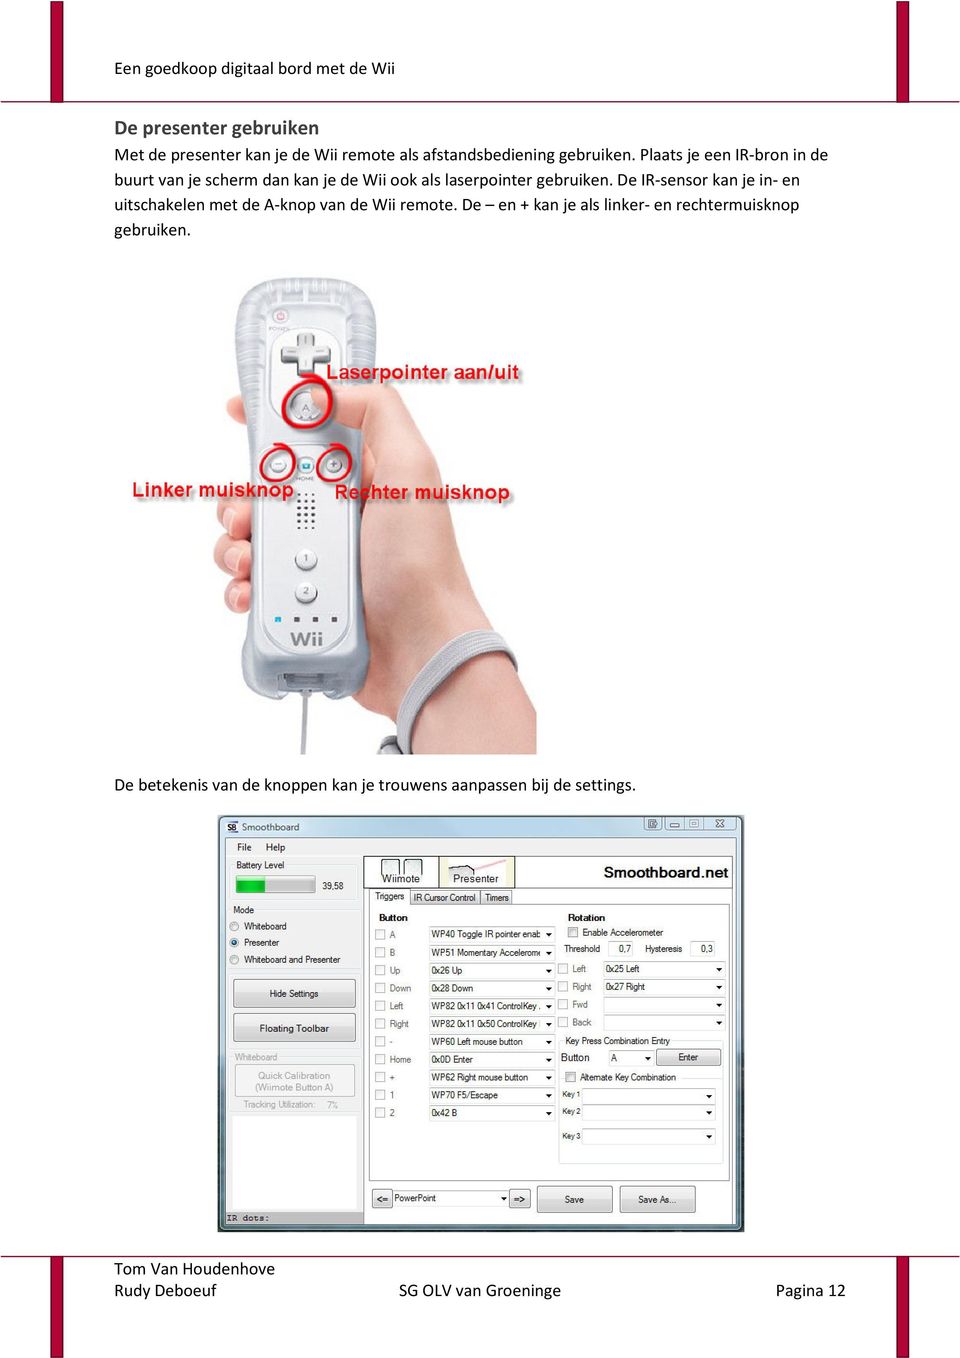 De IR-sensor kan je in- en uitschakelen met de A-knop van de Wii remote.